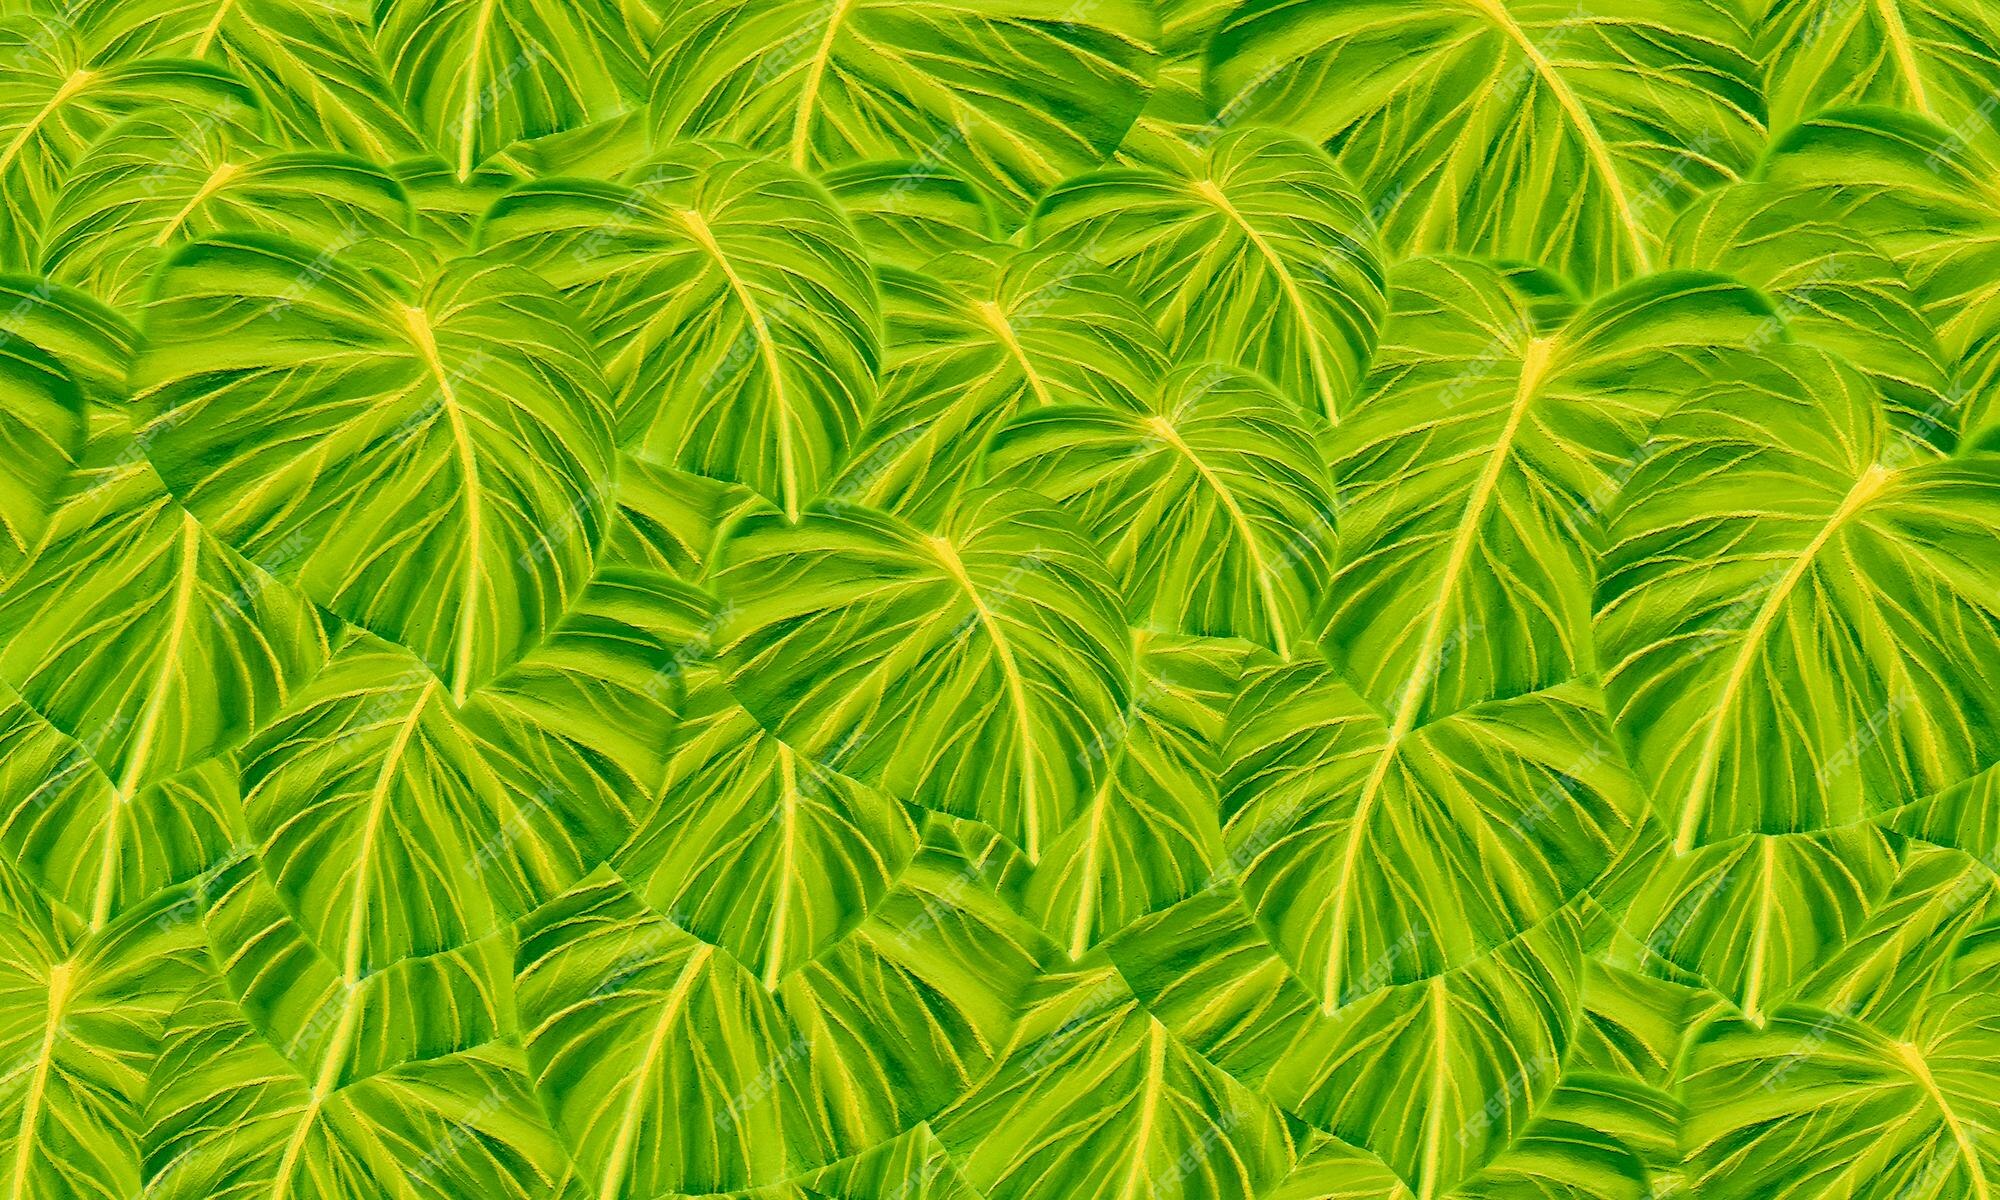 Vẽ nước lá cây xanh: Vẽ nước lá cây xanh thể hiện những sắc thái tuyệt đẹp của màu xanh trong thiên nhiên. Với kỹ thuật vẽ nước, các bức tranh về lá cây xanh trông rất sống động và tự nhiên. Hãy xem các tác phẩm về lá cây xanh được vẽ nước để cảm nhận sự tinh tế và thông minh của nghệ thuật vẽ này.